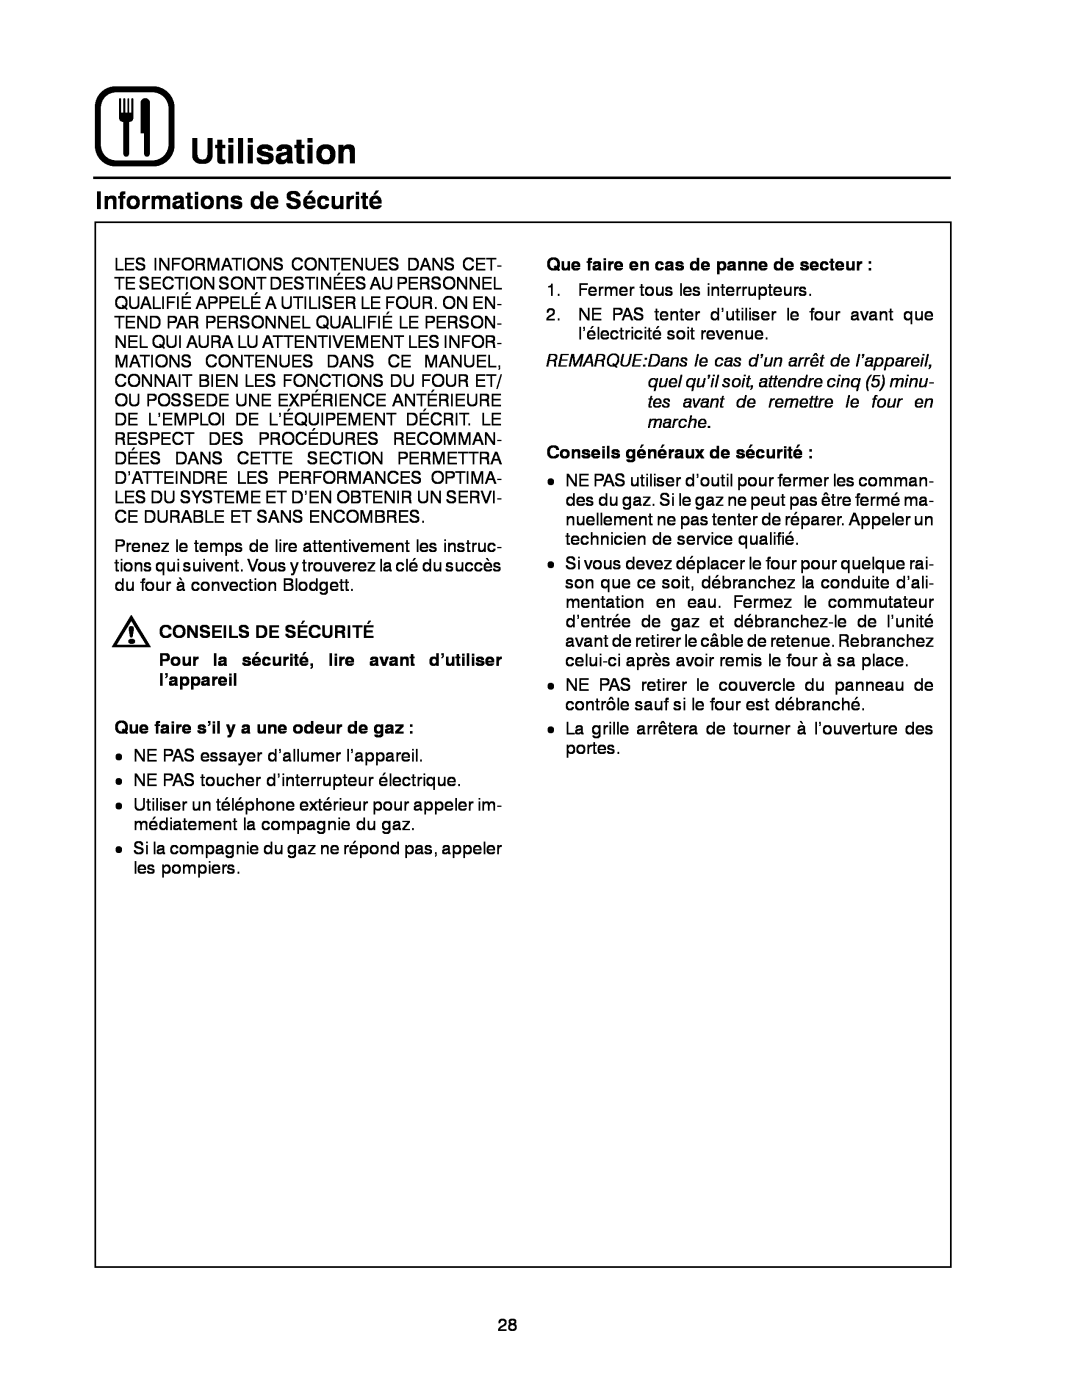 Blodgett XR8-G manual Utilisation, Informations de Sécurité, Conseils De Sécurité, Que faire s’il y a une odeur de gaz 